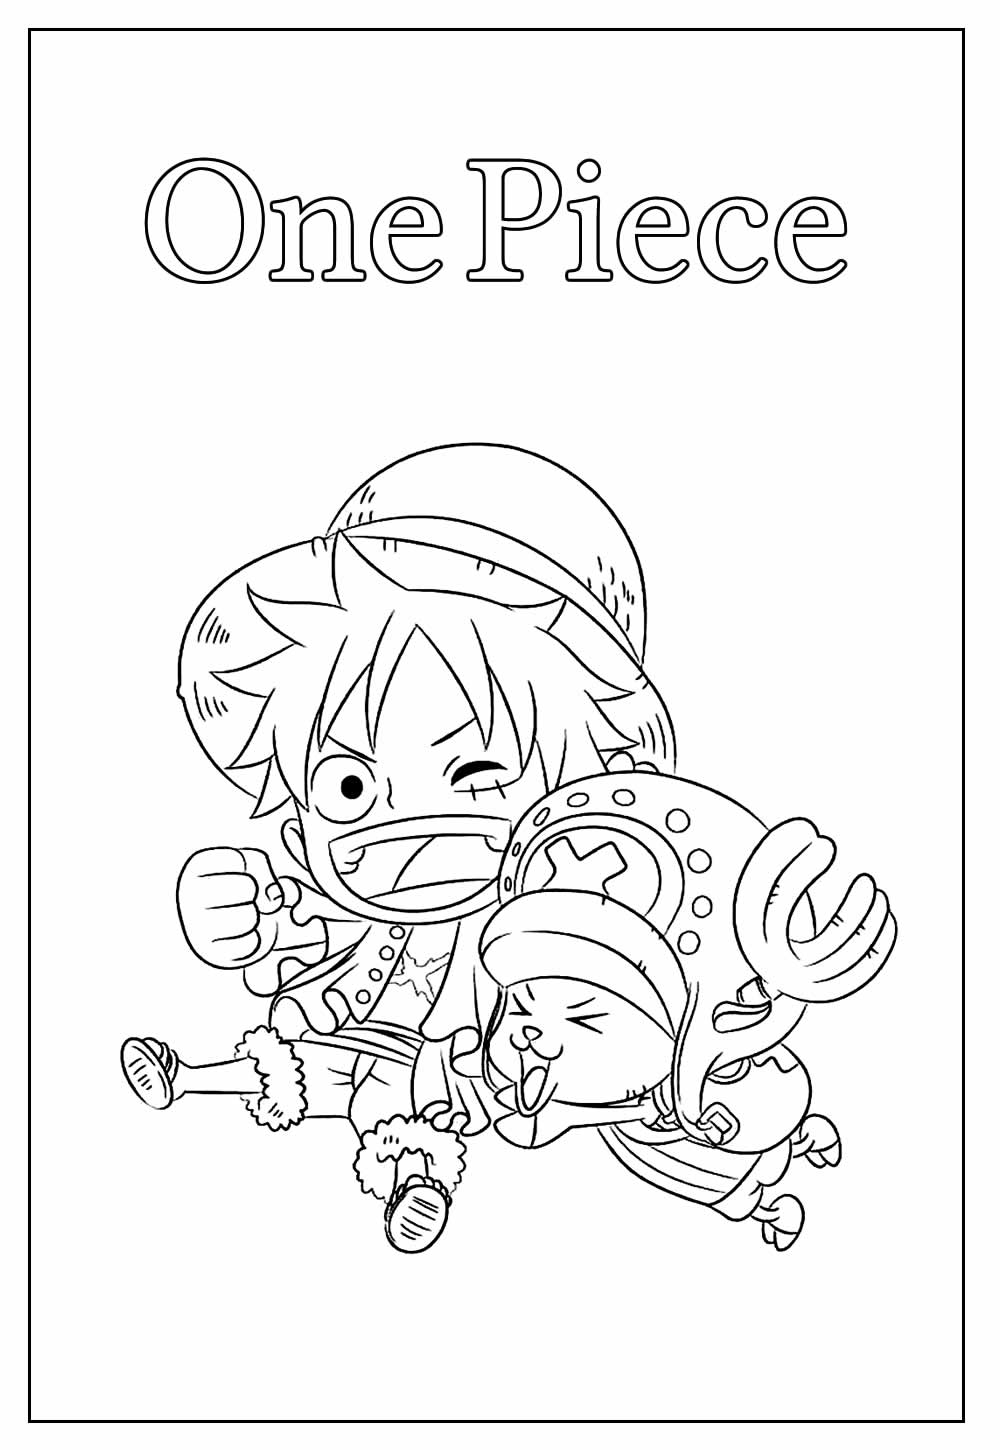 Desenho do One Piece